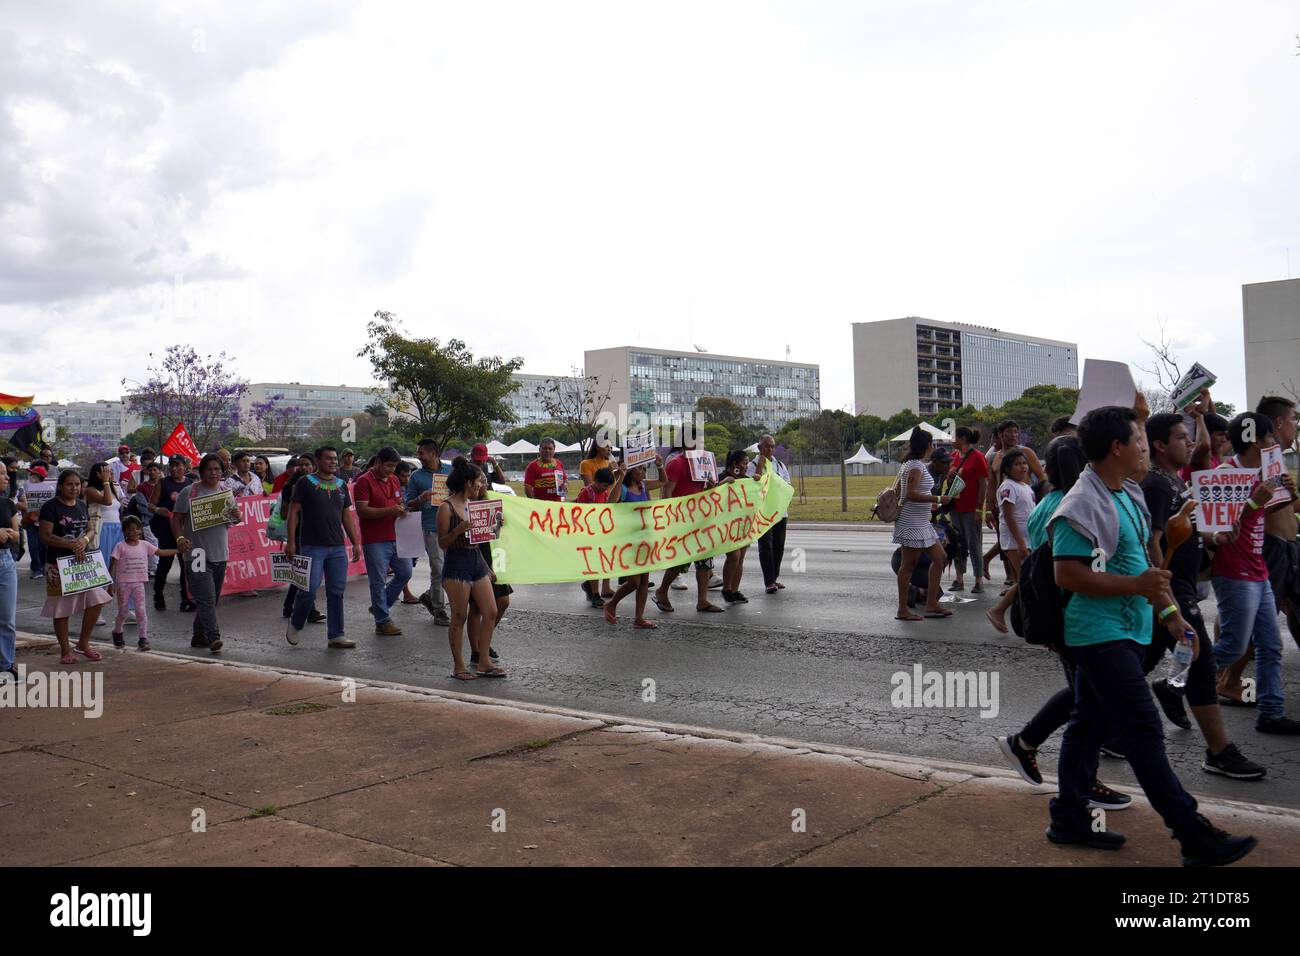 BRASILIA, BRÉSIL - 30 AOÛT 2023 : manifestations populaires à Brasilia contre la thèse "Marco Temporal" sur les terres indigènes au Brésil Banque D'Images